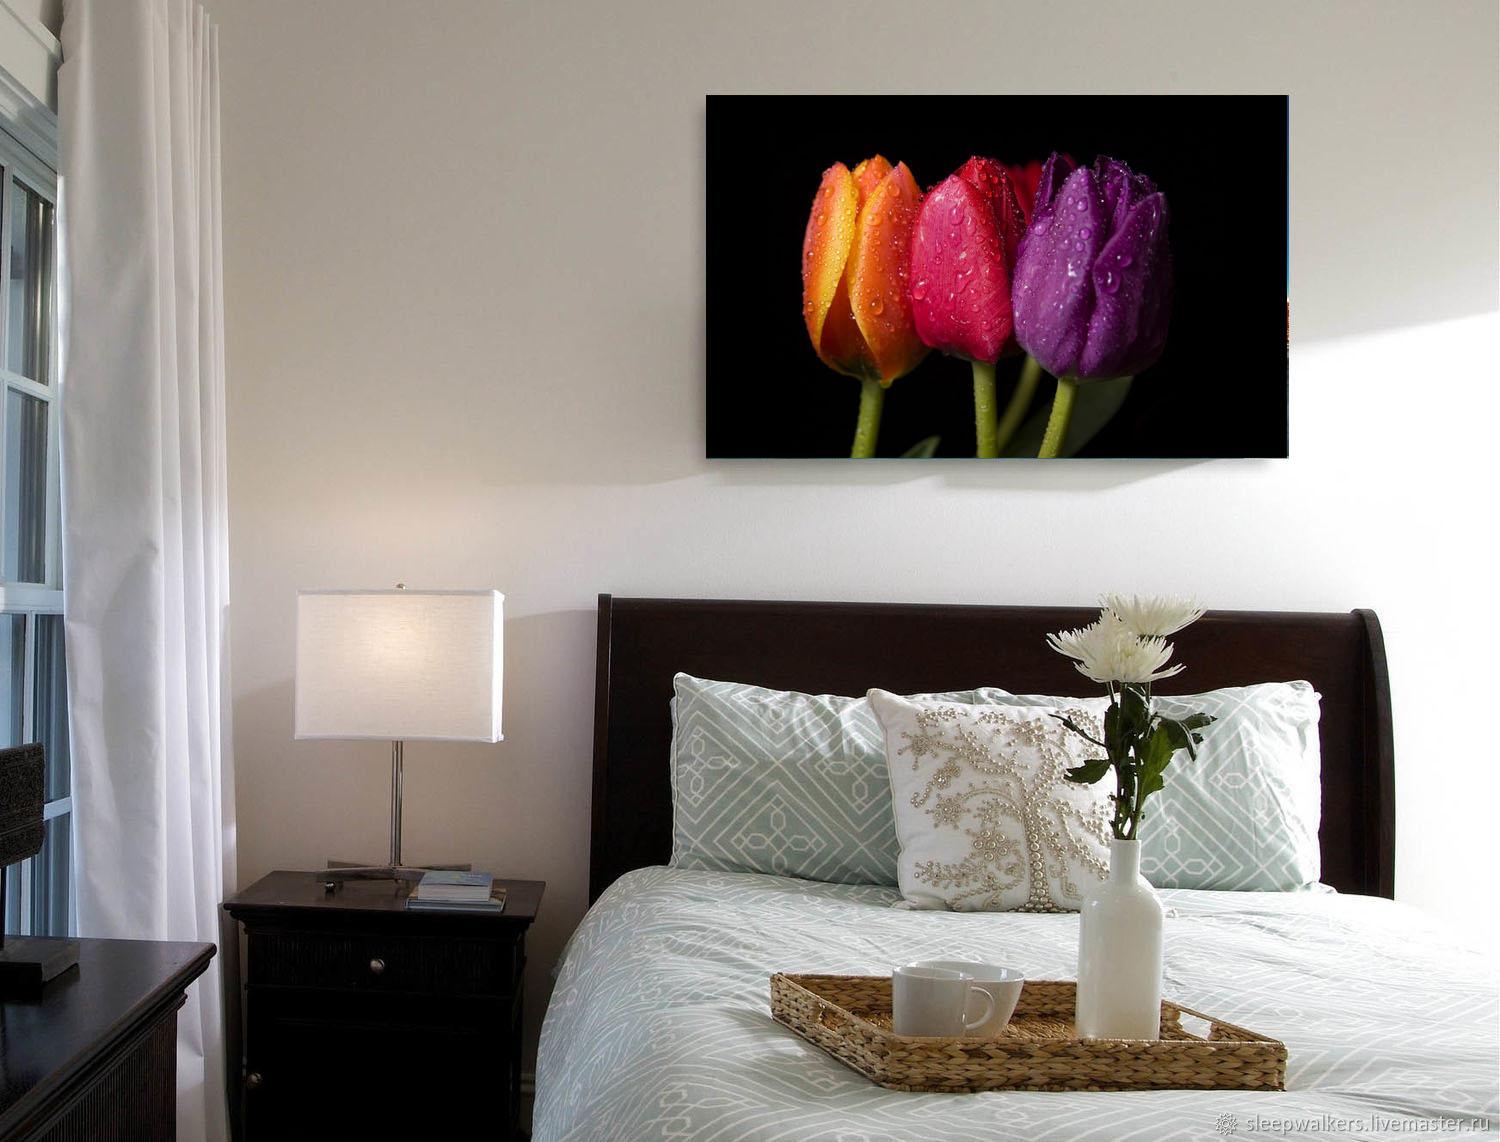 Zdjęcie obrazka - piękne tulipany